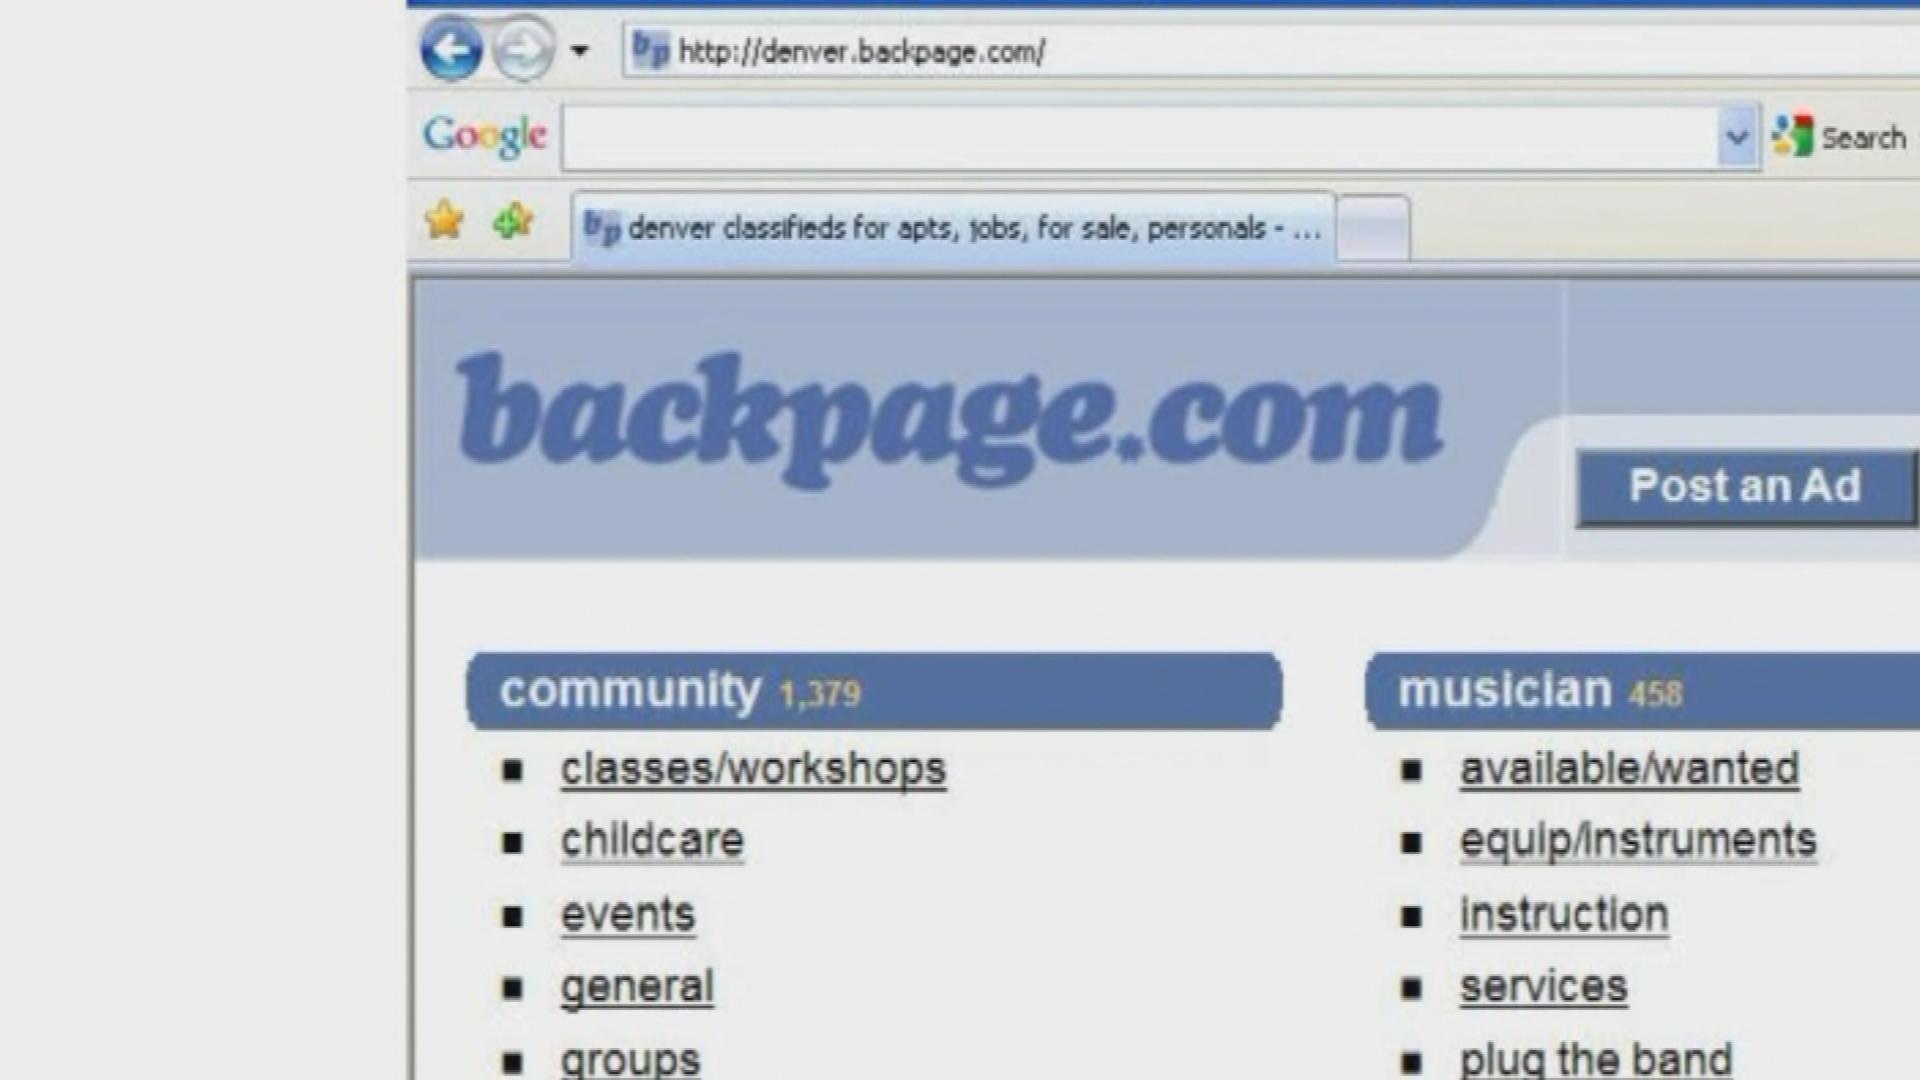 Backpage.com - CBS Denver. 